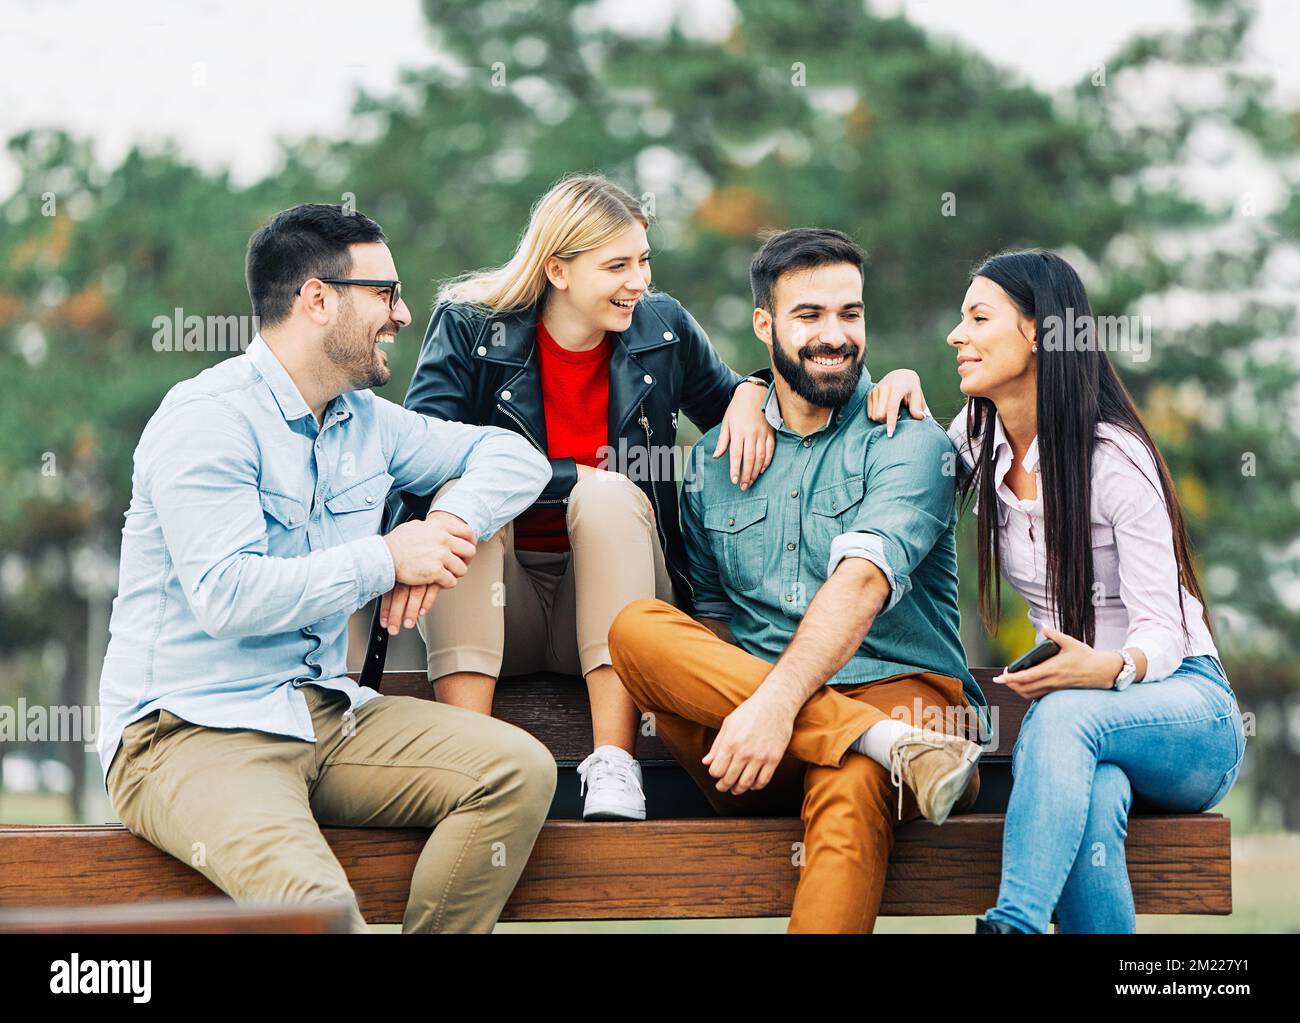 jóvenes que se divierten feliz grupo amistad estilo de vida de los estudiantes Foto de stock